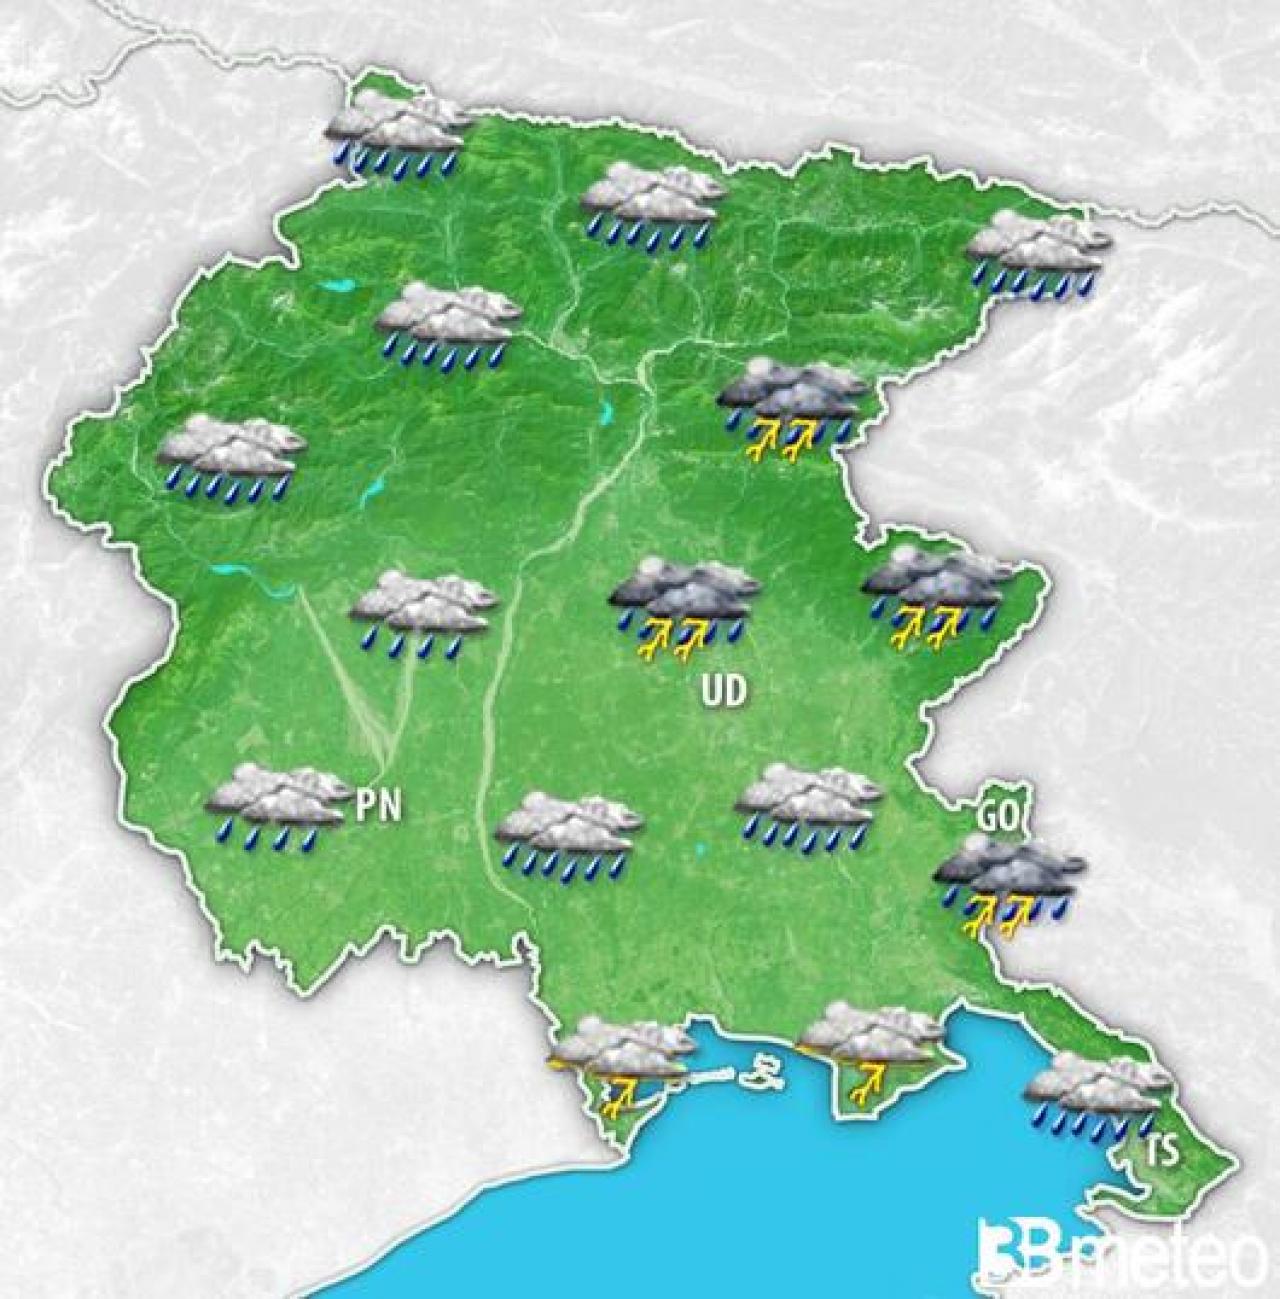 Meteo Friuli-VG: apice del maltempo nel pomeriggio-sera di giovedì 16 maggio